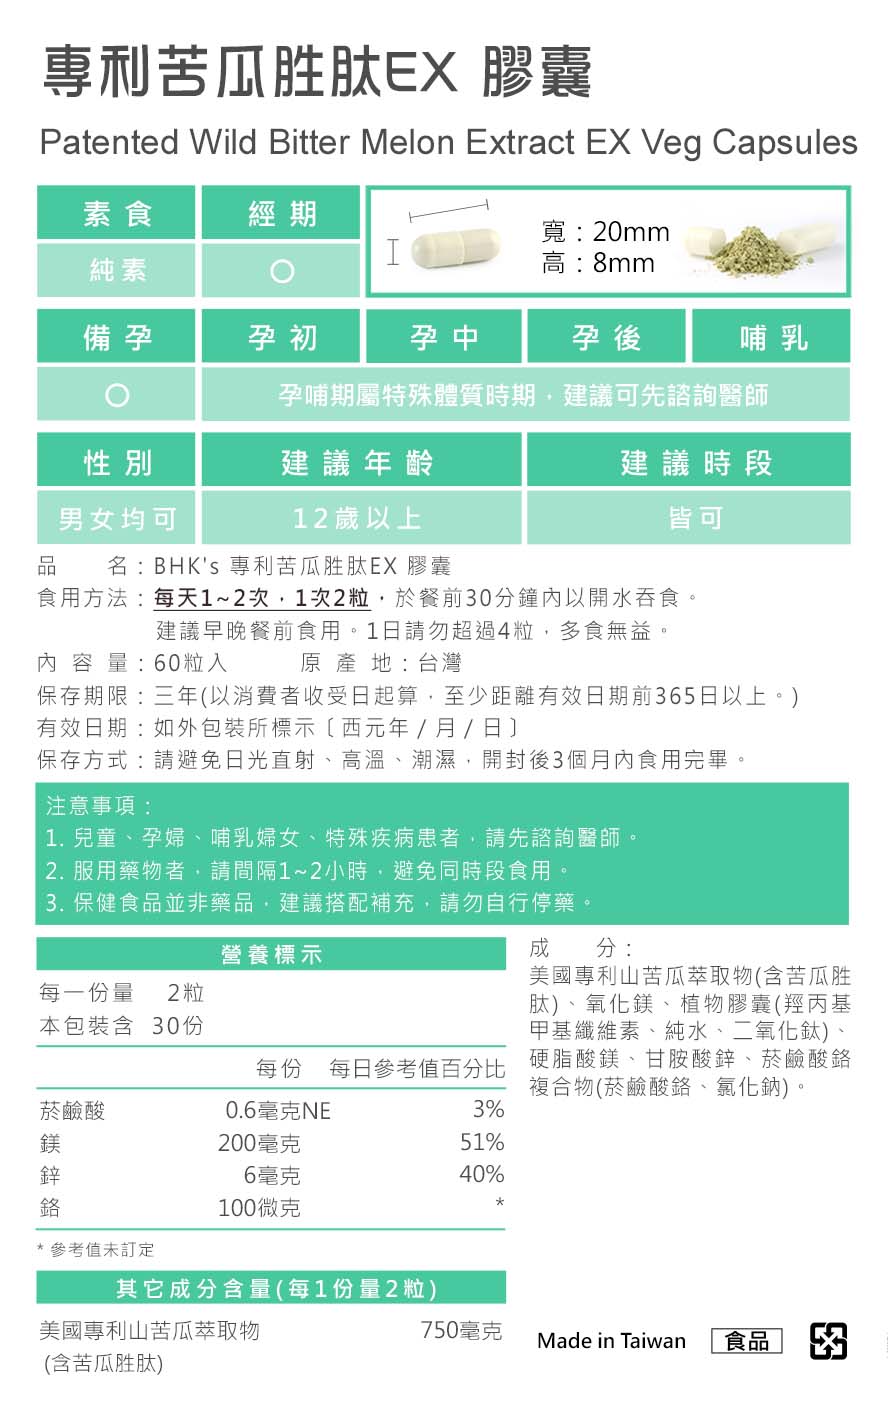 BHK's專利苦瓜胜肽，台灣製造、MIT台灣品牌，通過安全檢驗合格、安全無慮。